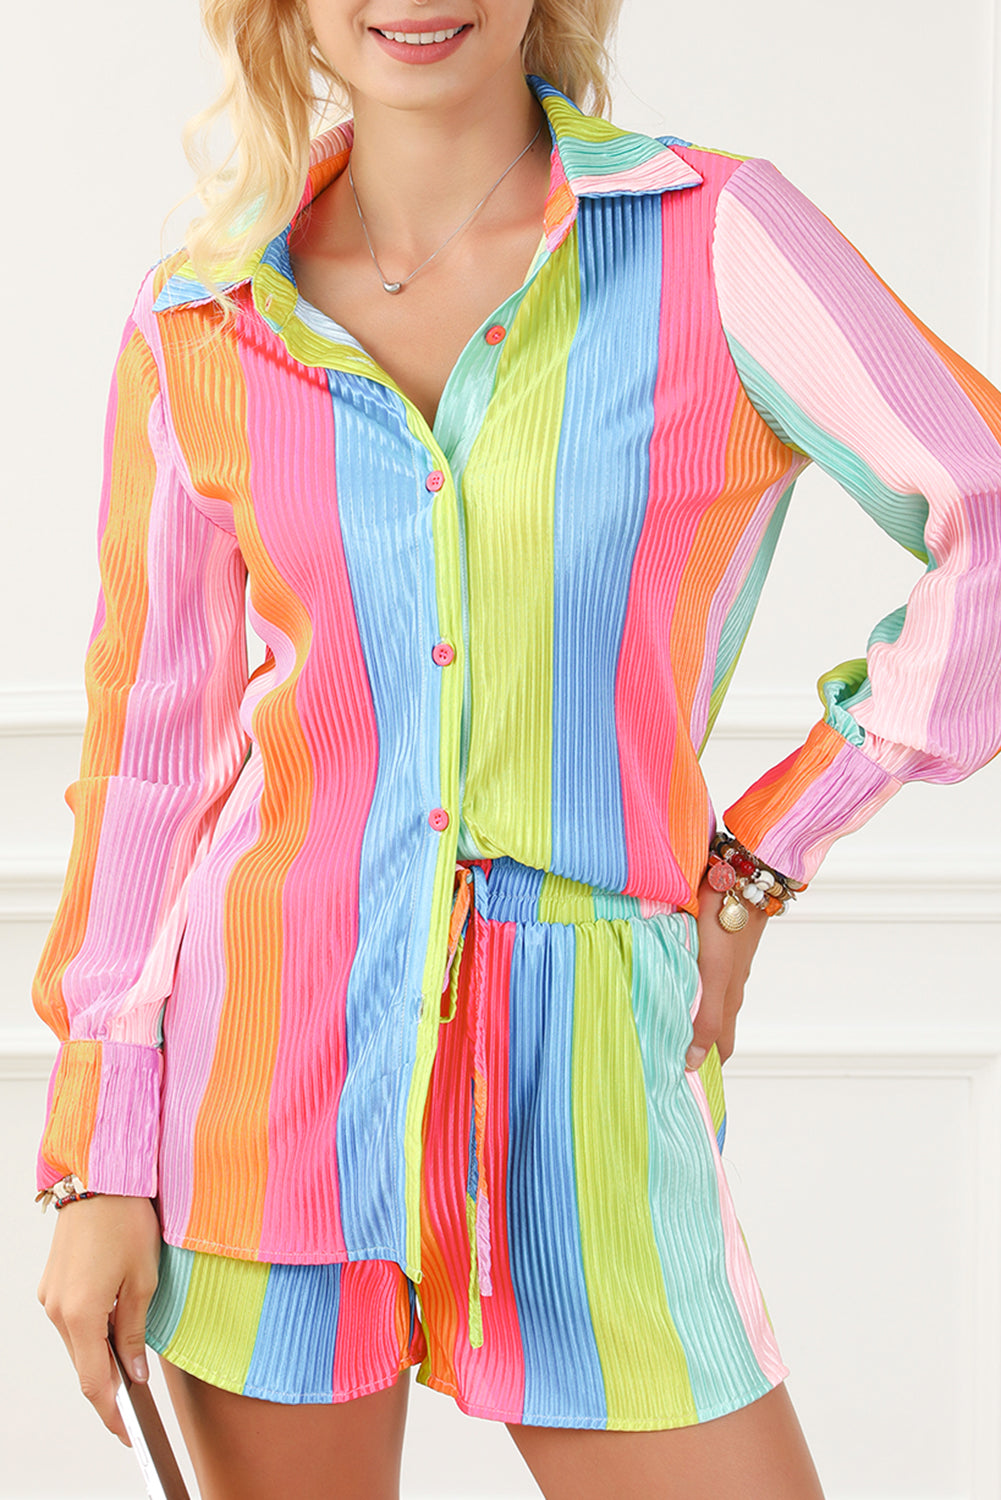 Completo con camicia e pantaloncini increspati a righe arcobaleno multicolori